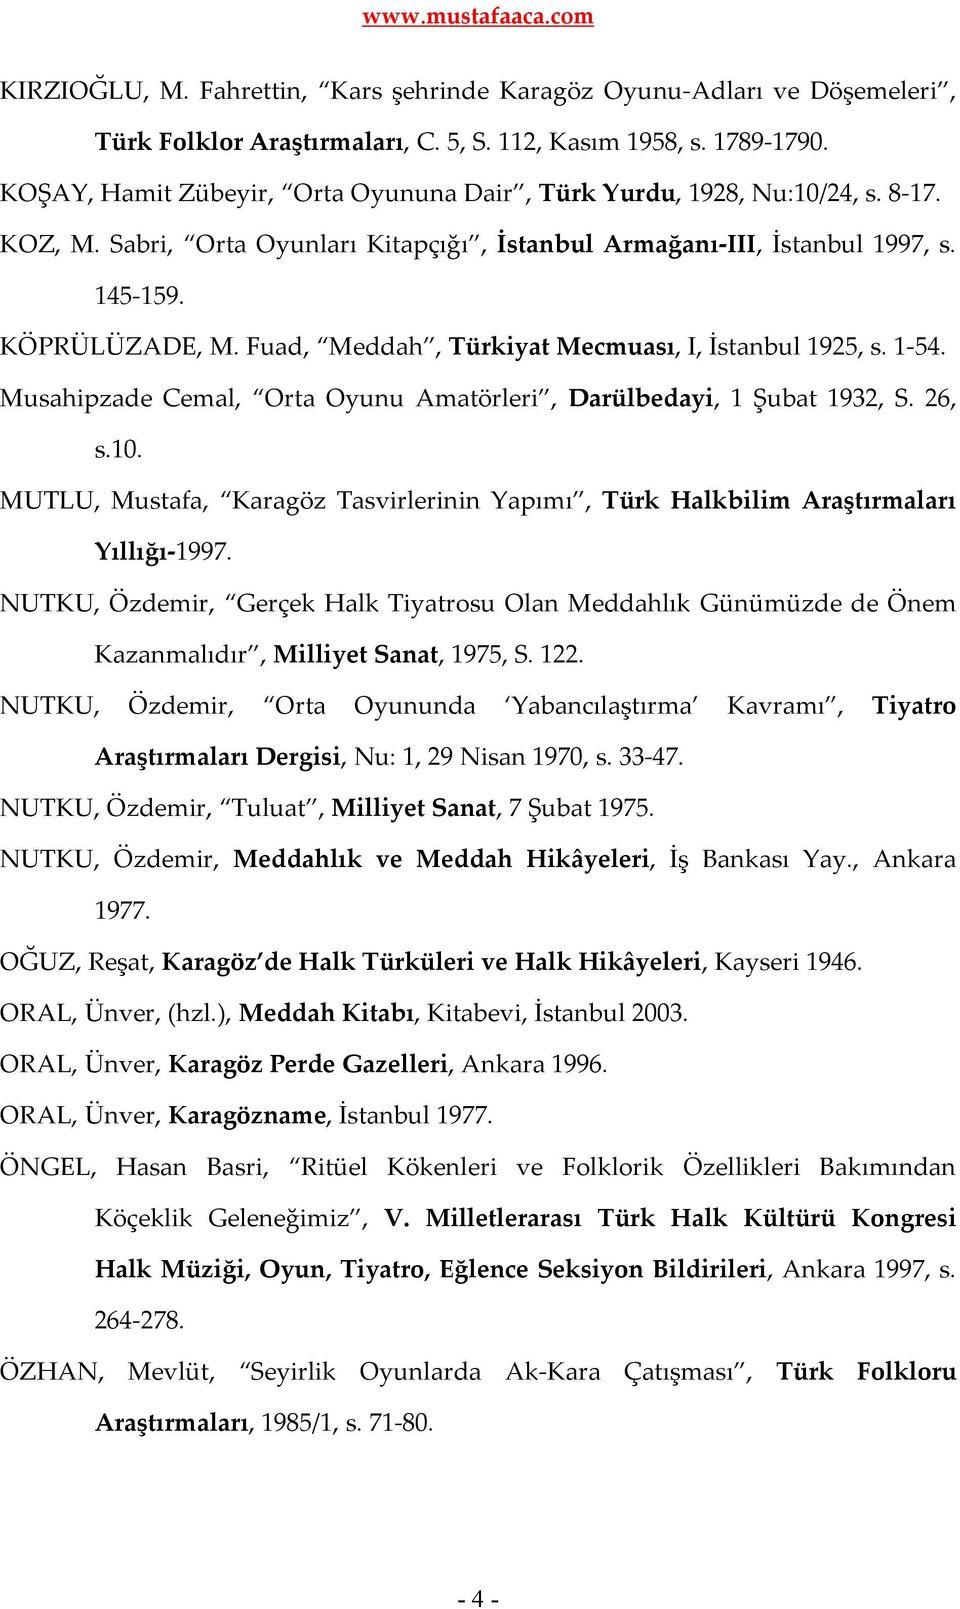 Fuad, Meddah, Türkiyat Mecmuası, I, İstanbul 1925, s. 1-54. Musahipzade Cemal, Orta Oyunu Amatörleri, Darülbedayi, 1 Şubat 1932, S. 26, s.10.